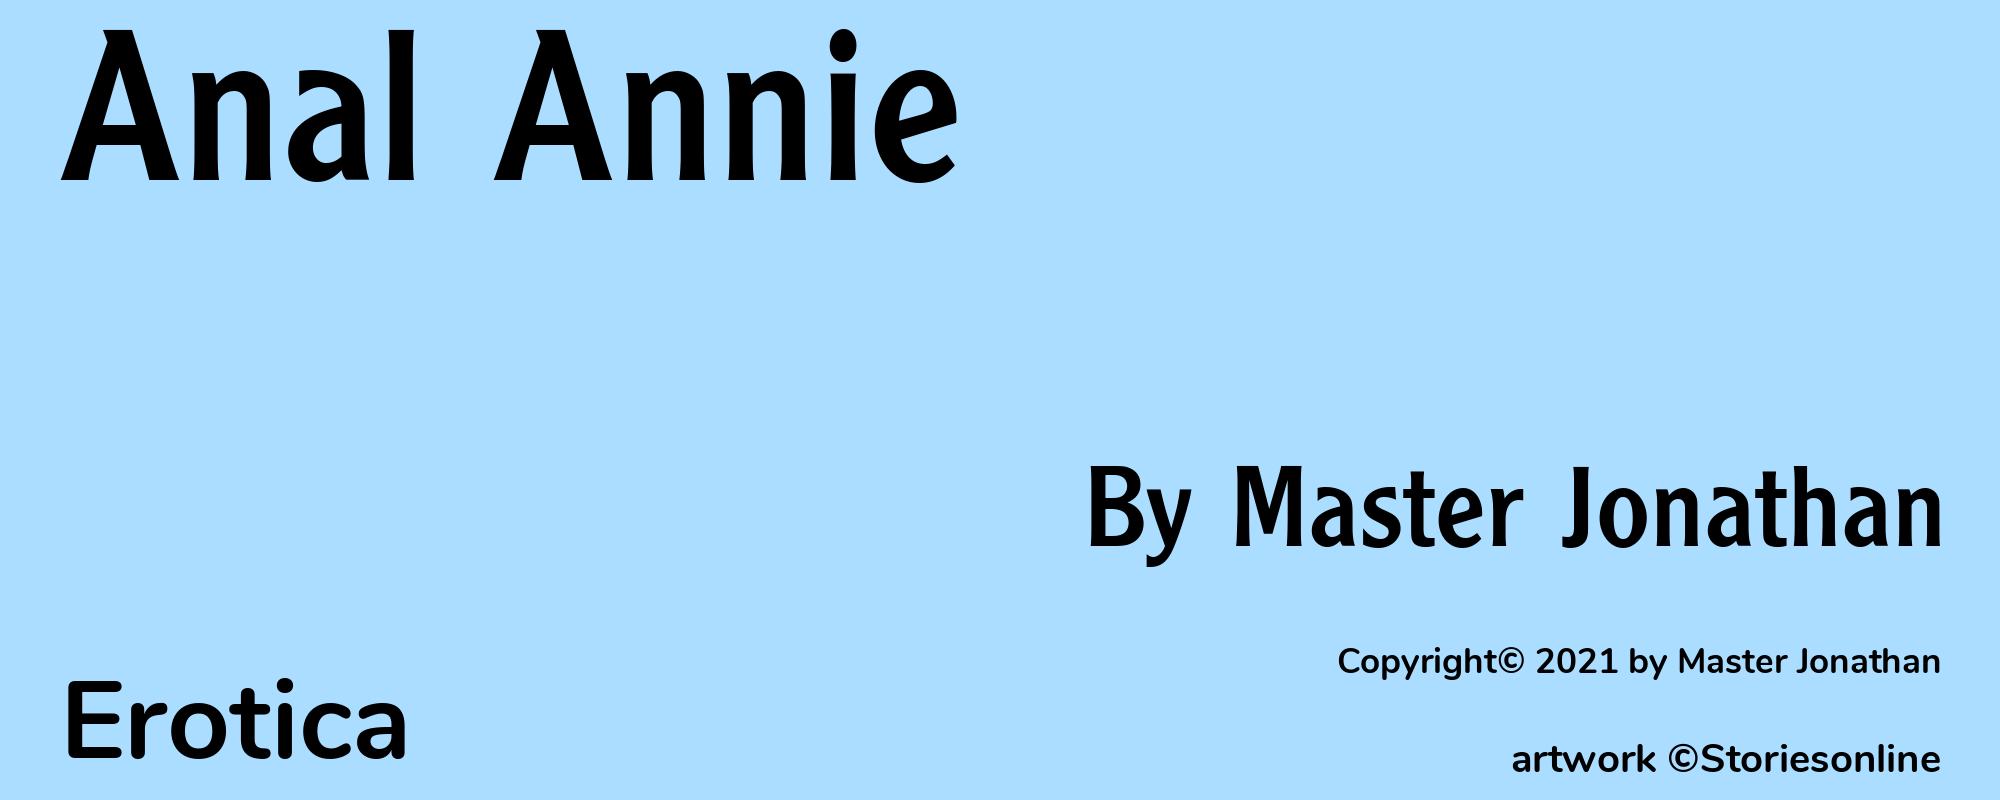 Anal Annie - Cover